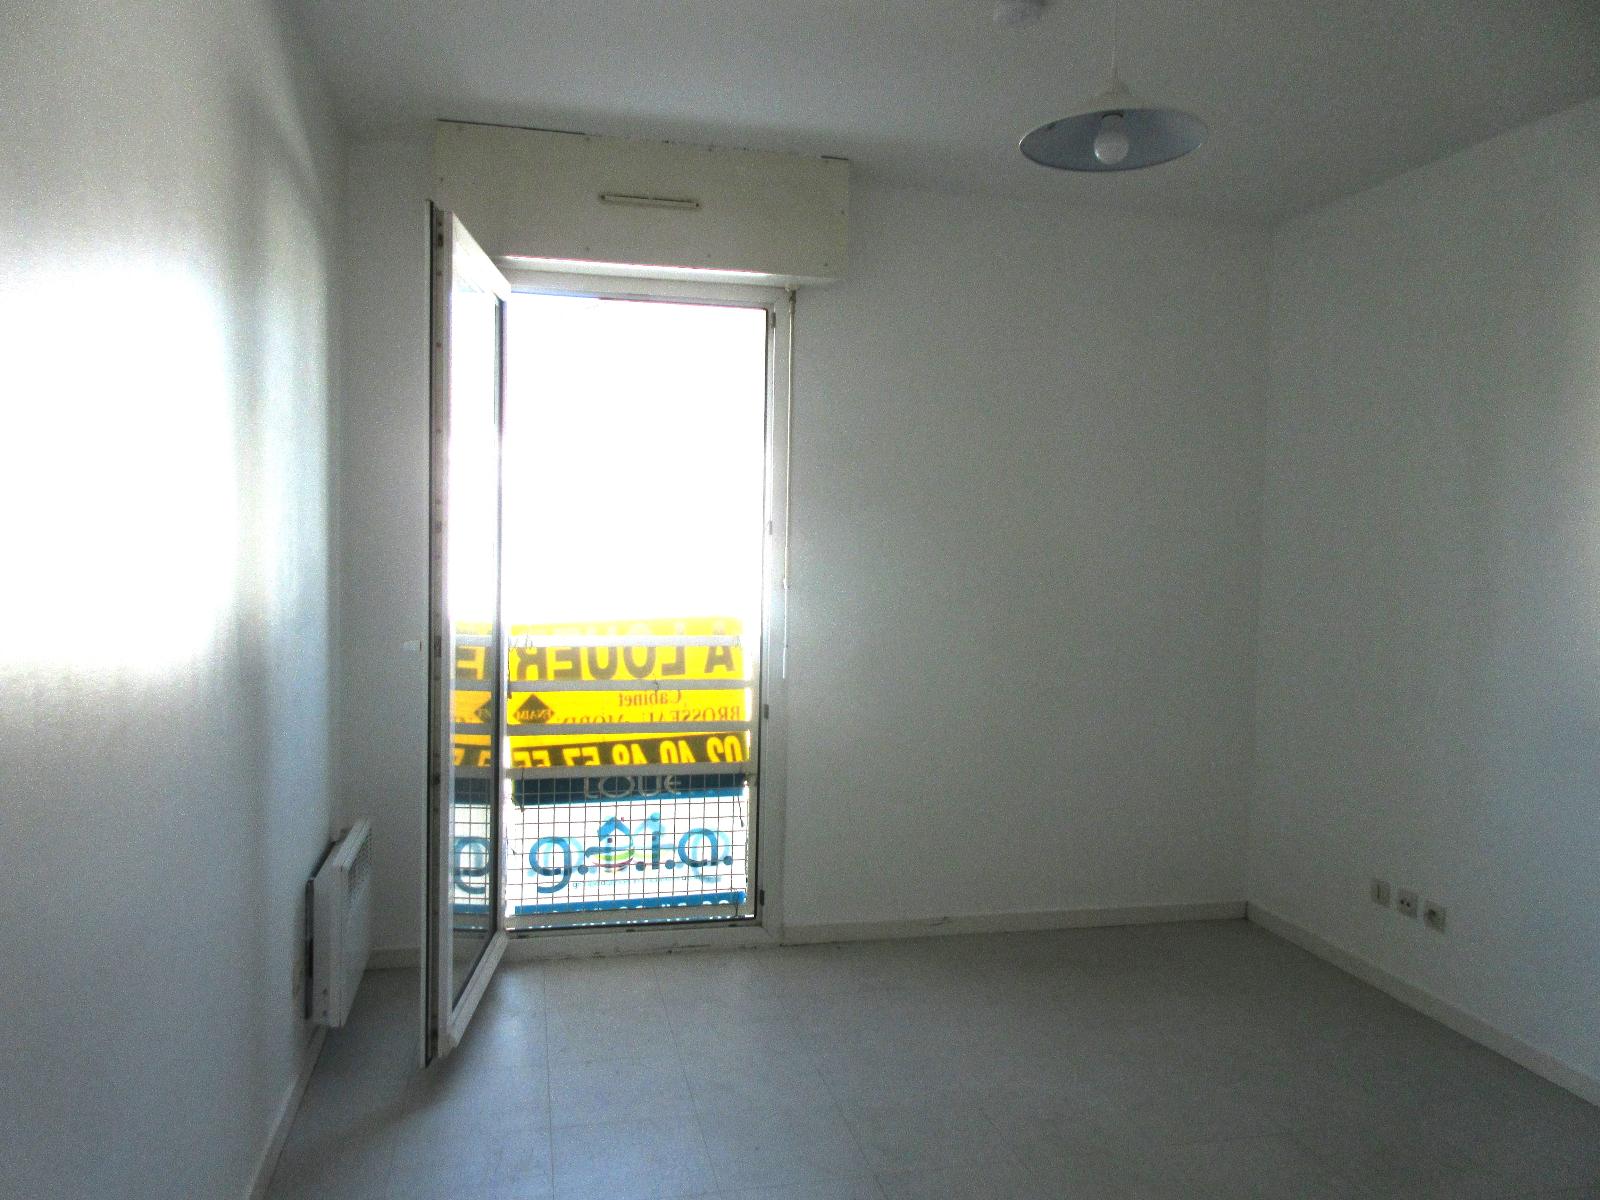 Appartement 1 pièce - 18m² - NANTES